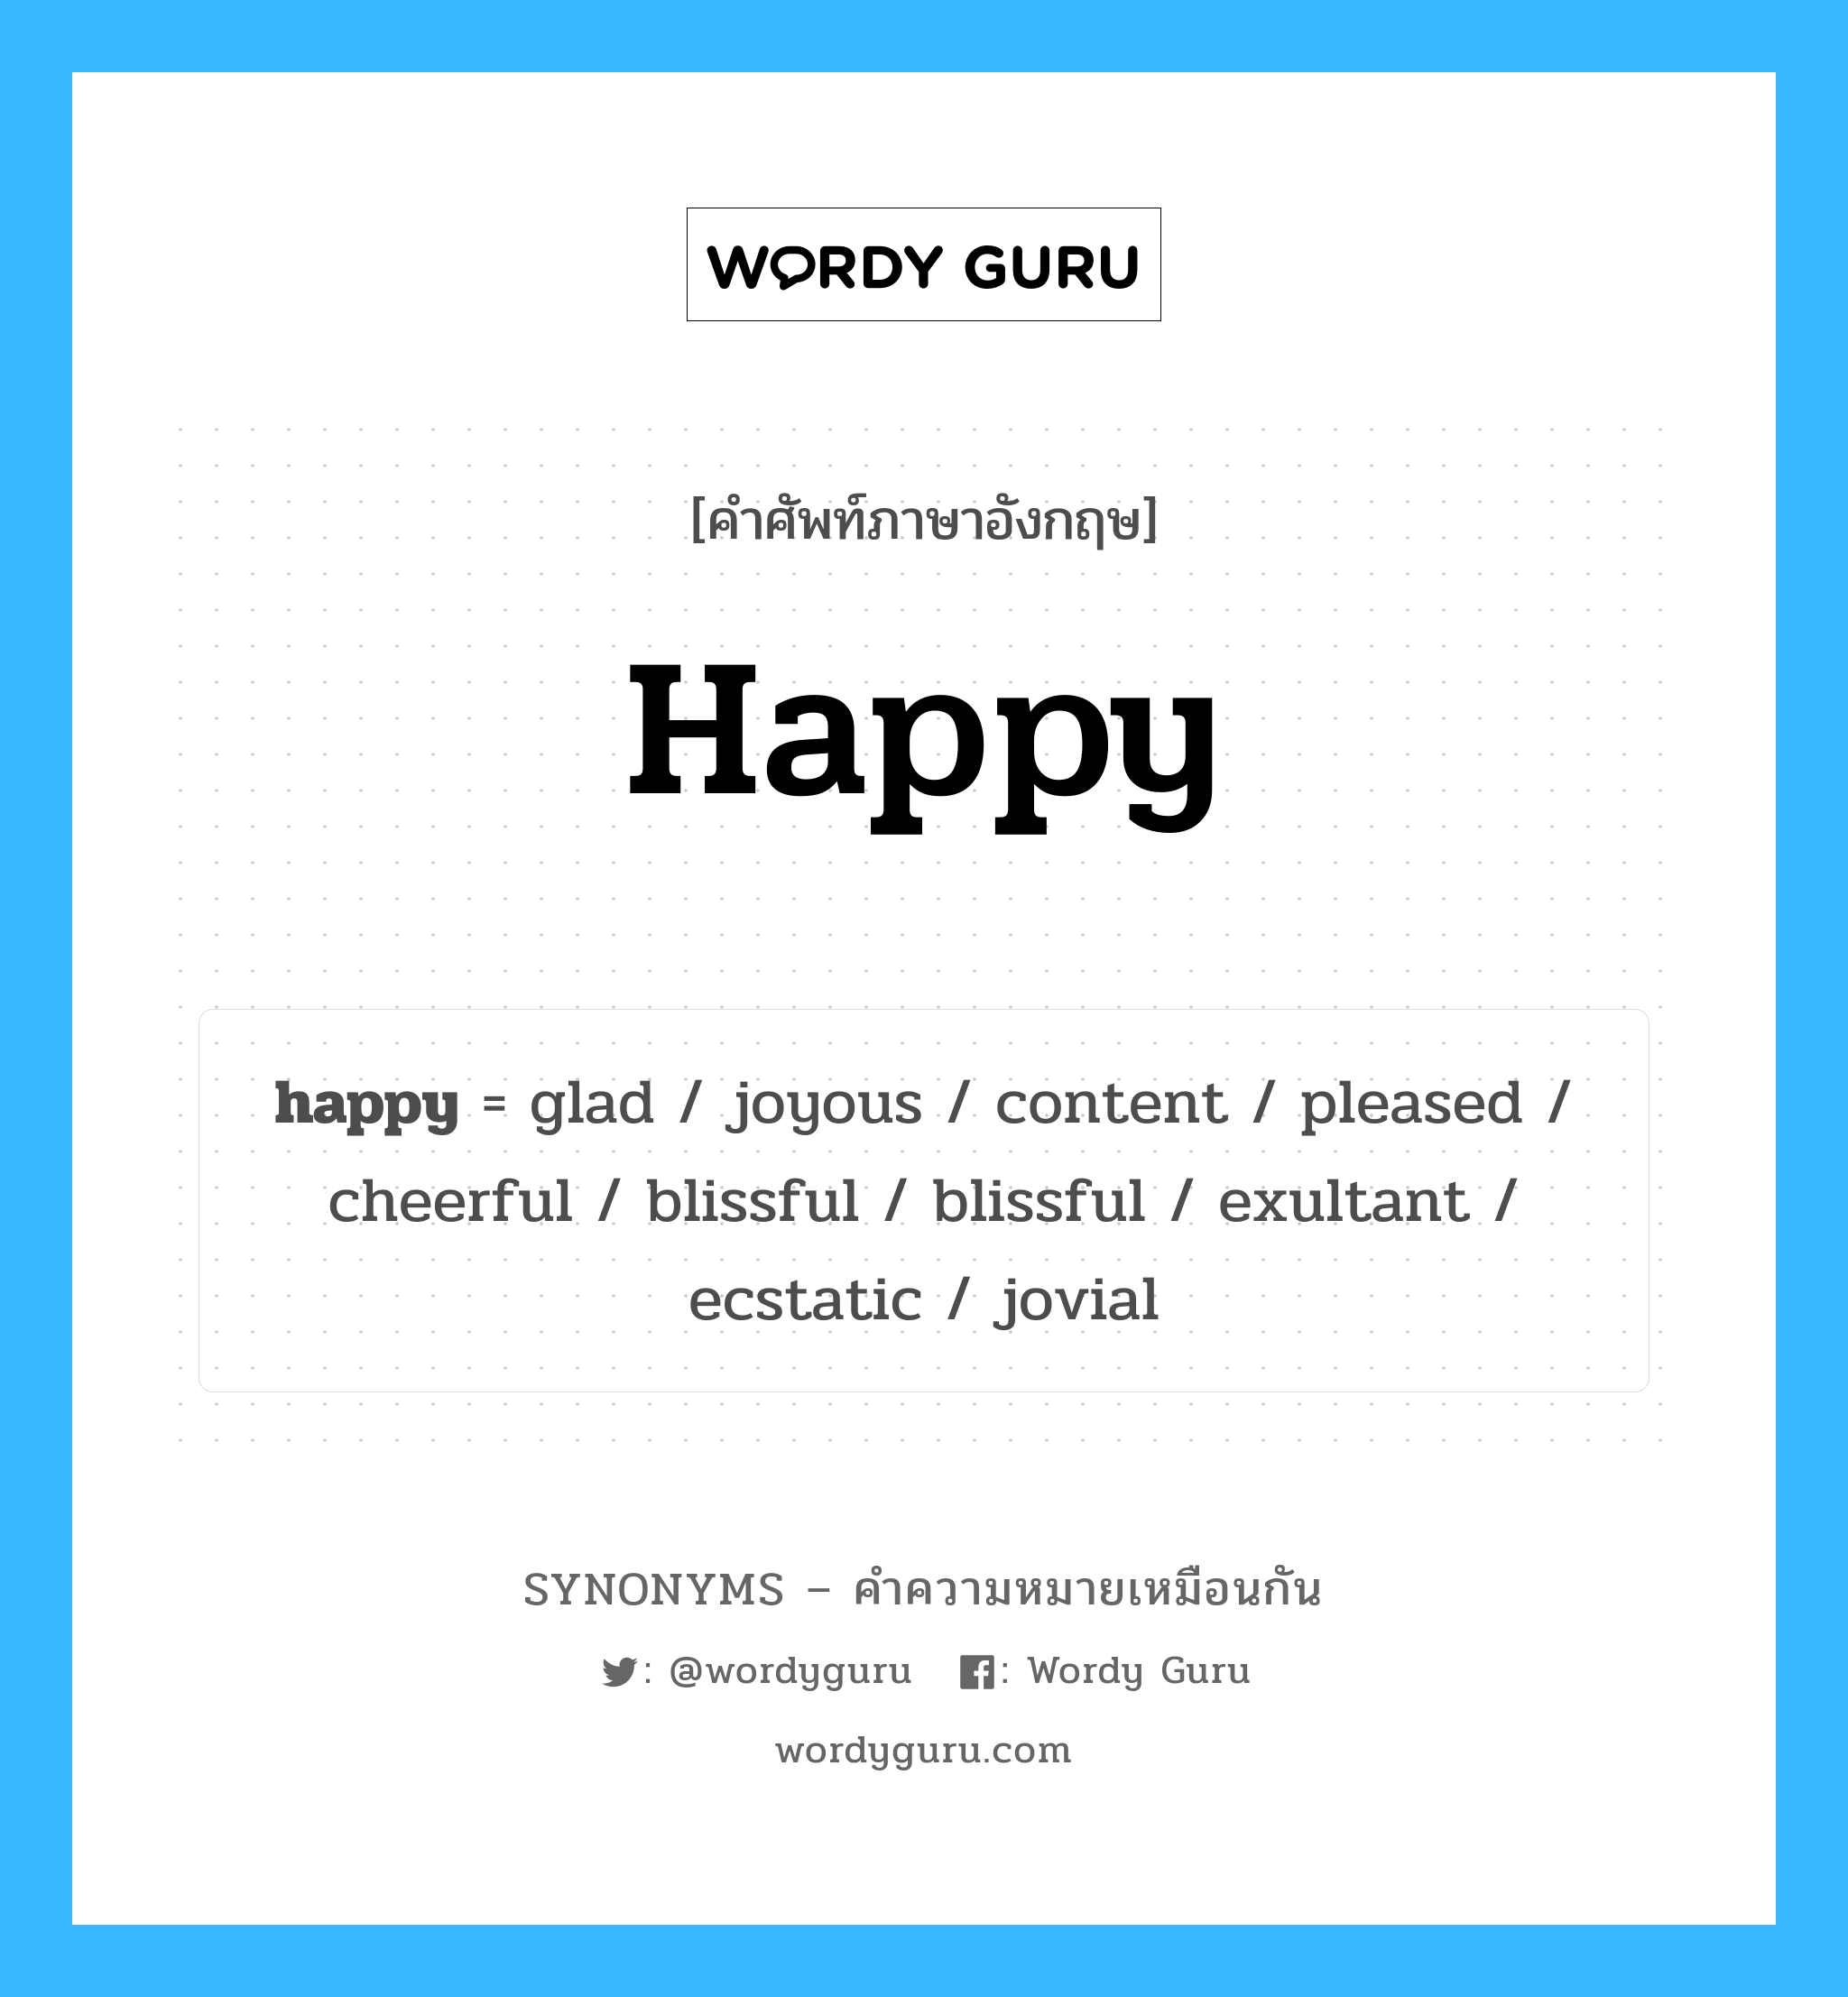 cheerful เป็นหนึ่งใน happy และมีคำอื่น ๆ อีกดังนี้, คำศัพท์ภาษาอังกฤษ cheerful ความหมายคล้ายกันกับ happy แปลว่า ร่าเริง หมวด happy